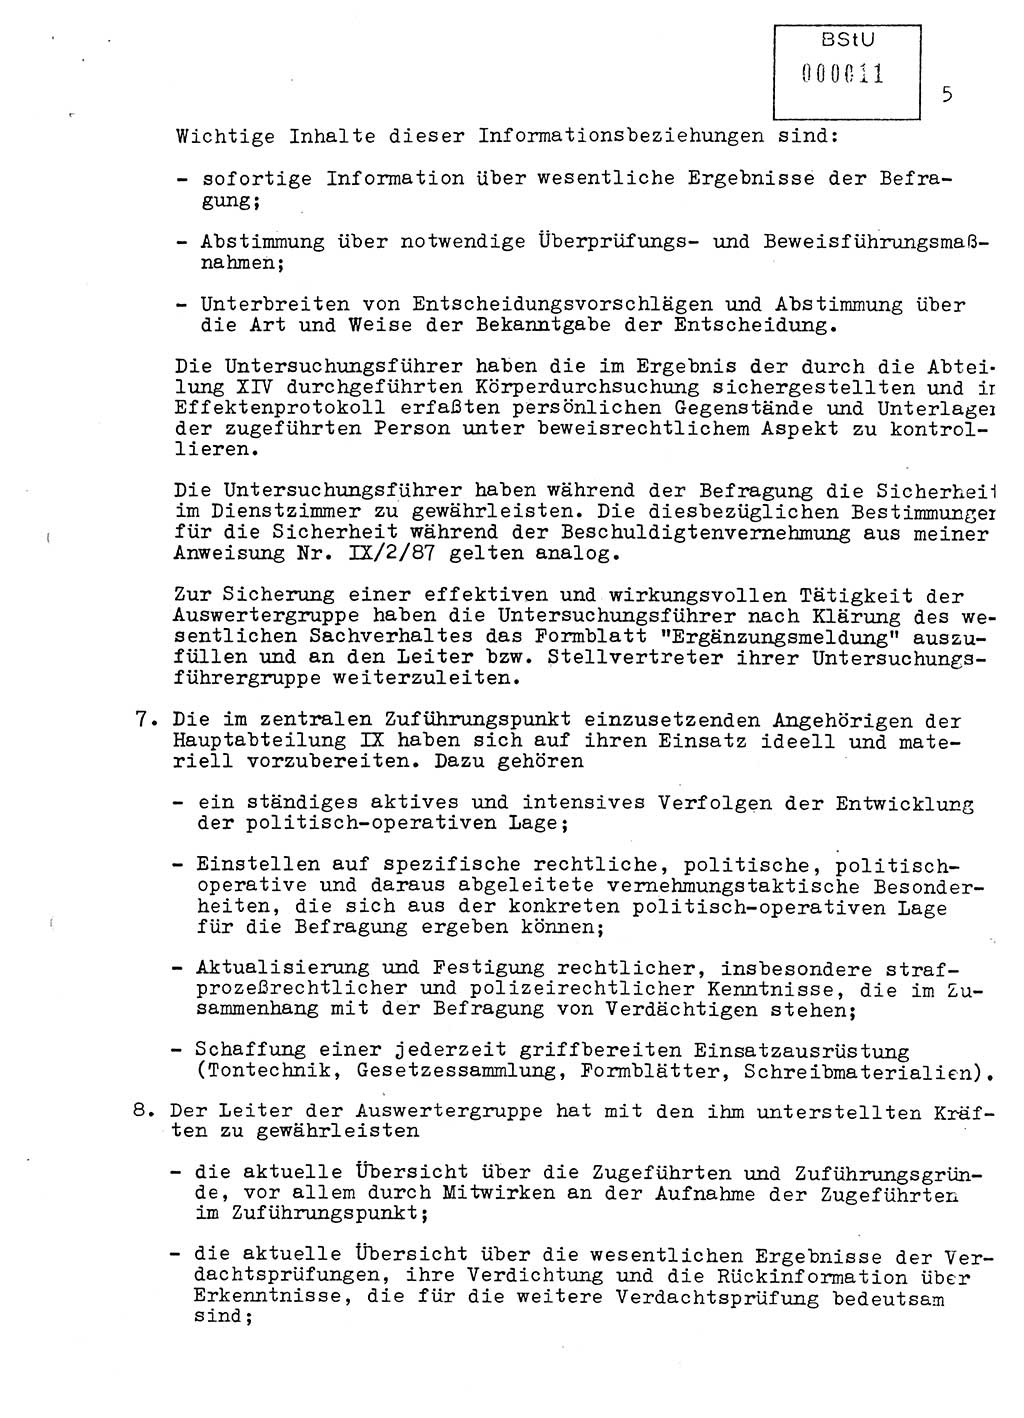 Vorläufige Anweisung Nr. Ⅸ/ 1/88 zur Verantwortung und Arbeitsweise der im Zuführungspunkt des MfS eingesetzten Angehörigen der Hauptabteilung Ⅸ, [Deutsche Demokratische Republik (DDR), Ministerium für Staatssicherheit (MfS)] Hauptabteilung (HA) Ⅸ, Berlin 1988, Seite 5 (Anw. 1/88 MfS DDR HA Ⅸ 1/88 1988, S. 5)